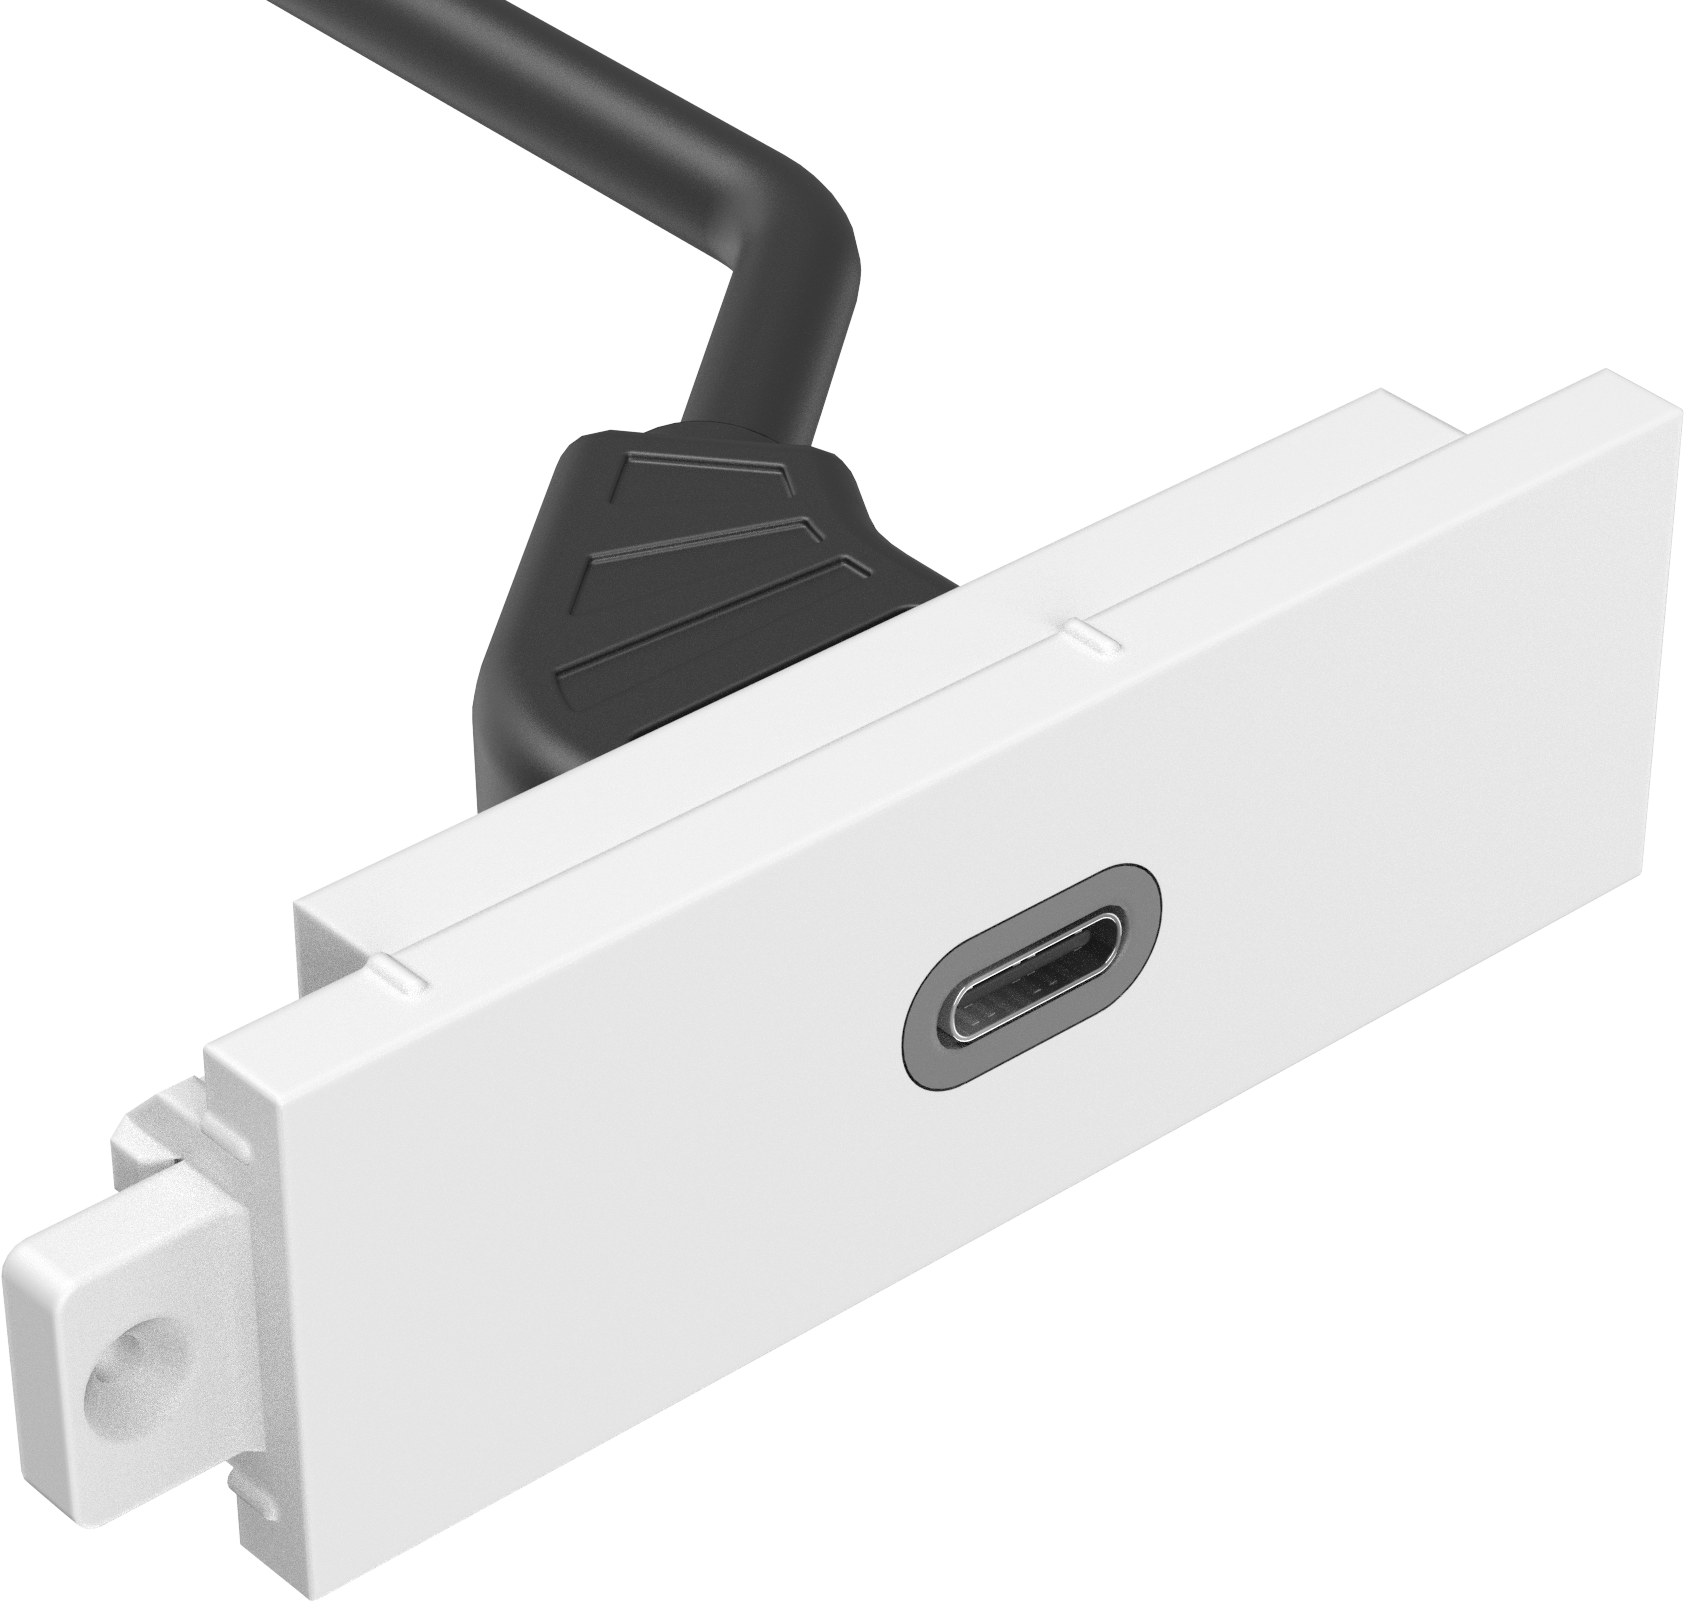 An image showing Techconnect USB-C module